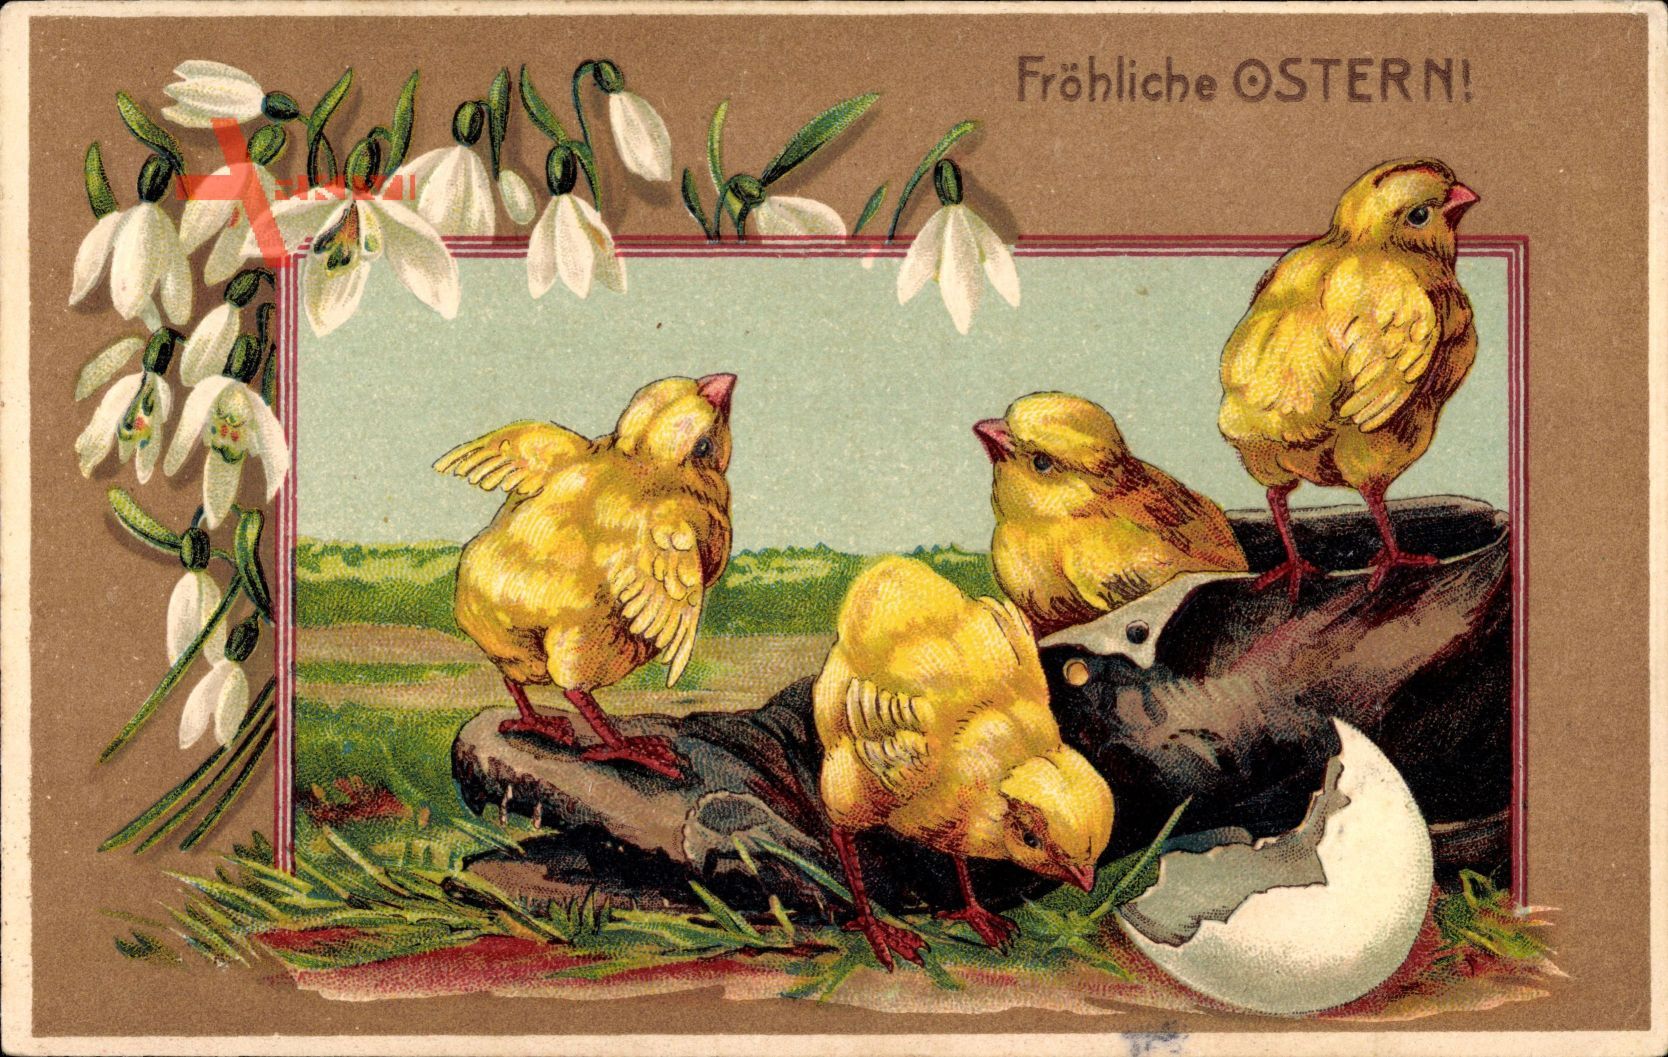 Glückwunsch Ostern, Küken schlüpfen aus Eierschale, Schuh